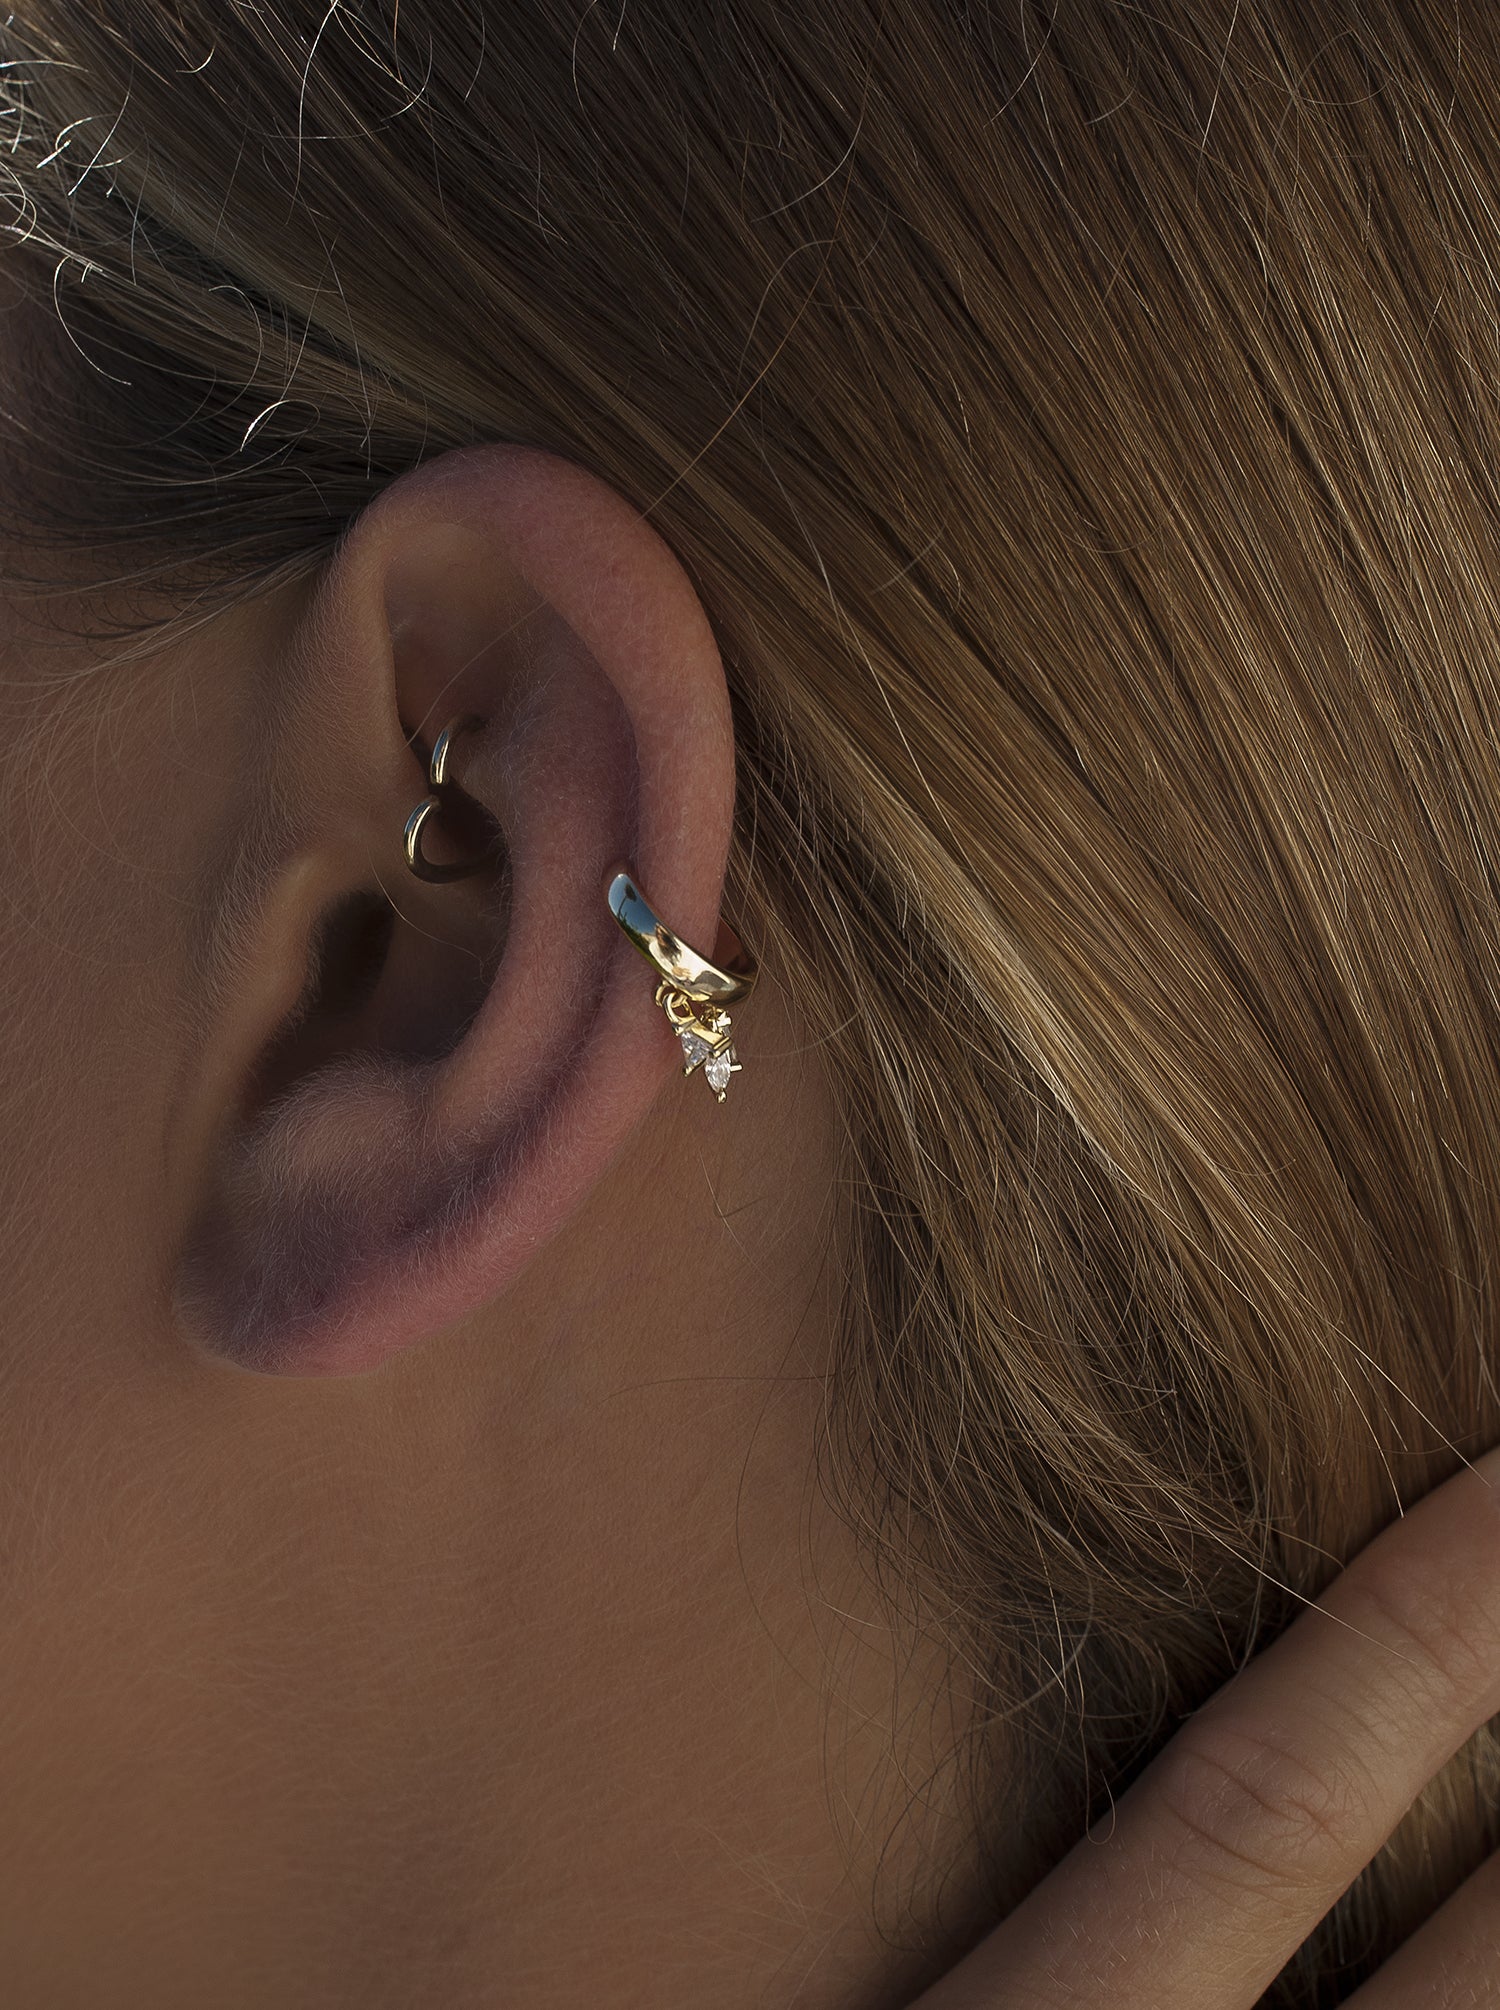 Ear cuff de plata bañada en oro diseño circonitas colgando